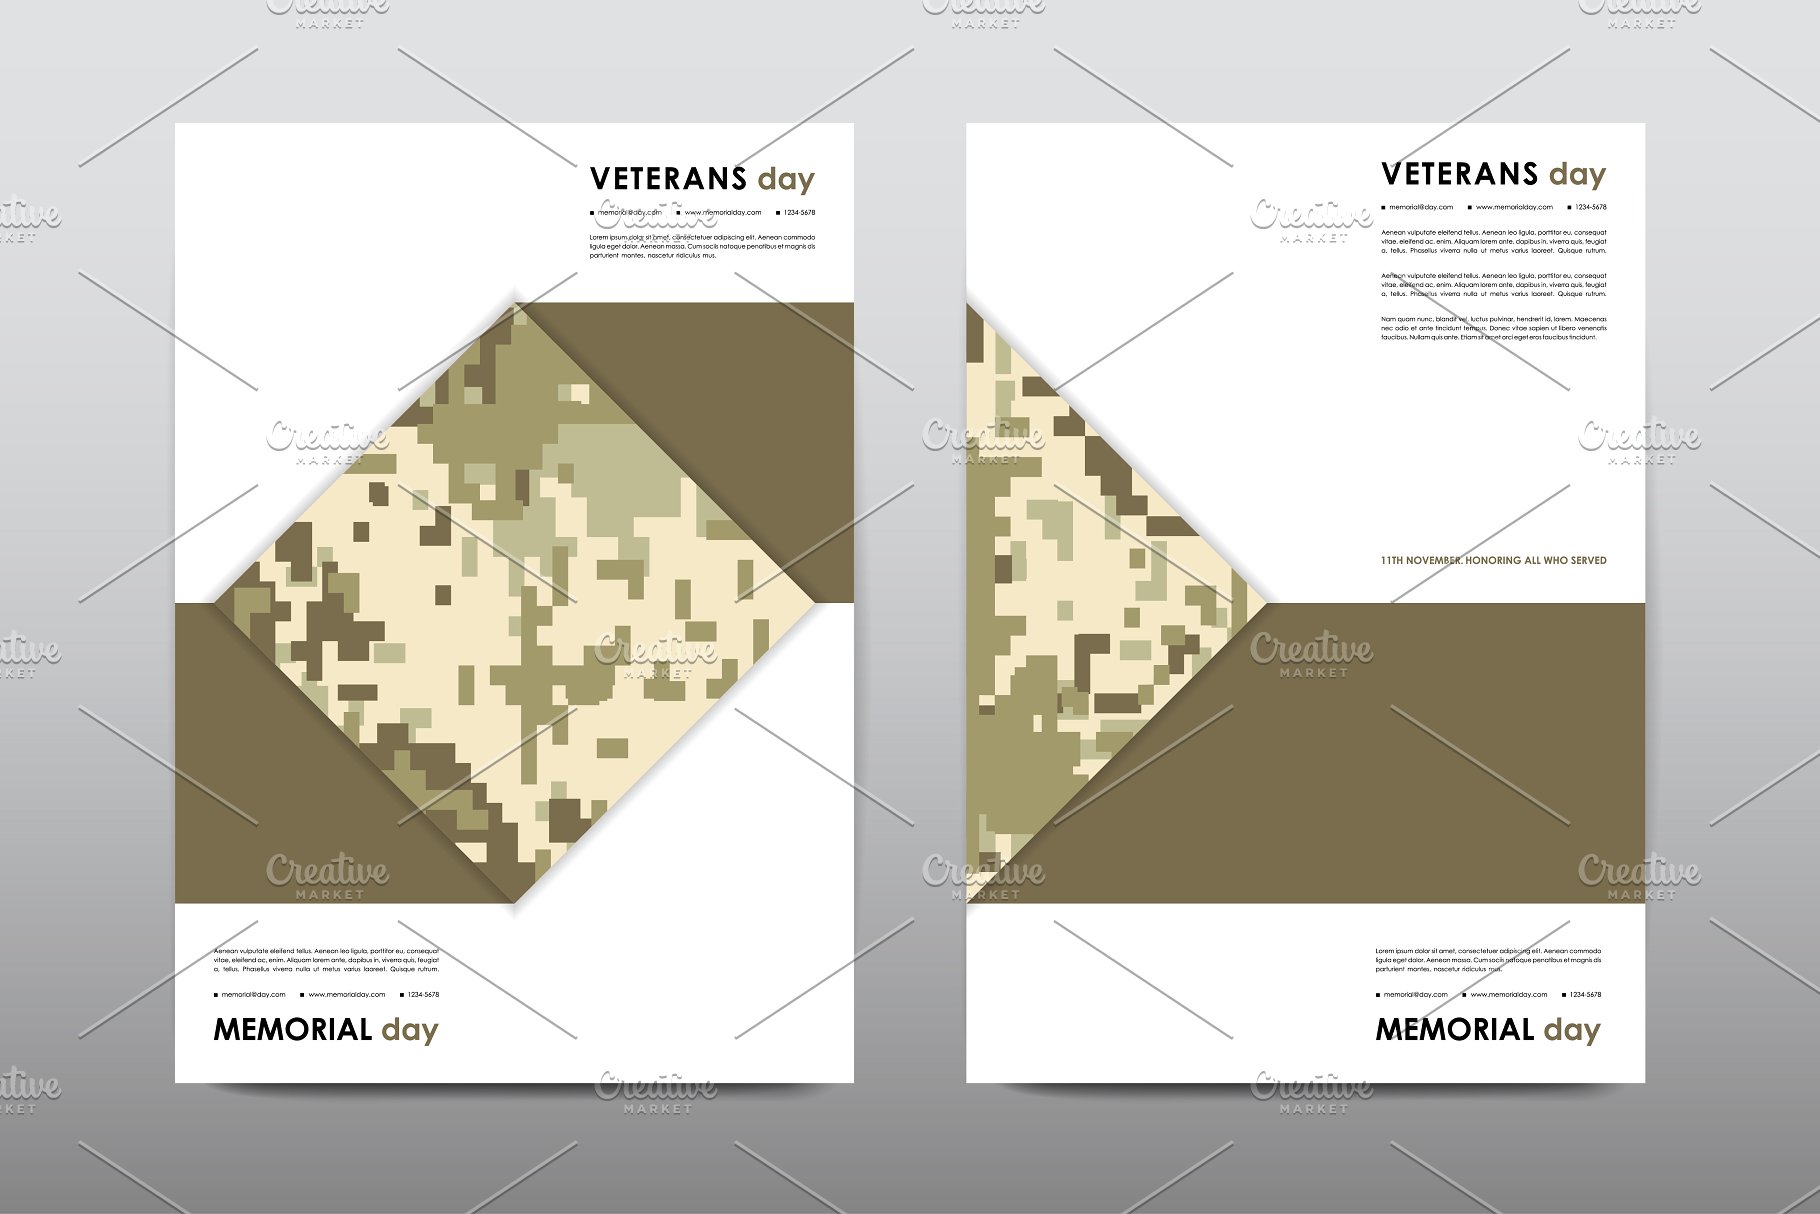 40+老兵节军人宣传小册模板 Veteran’s Day Brochures Bundle插图27